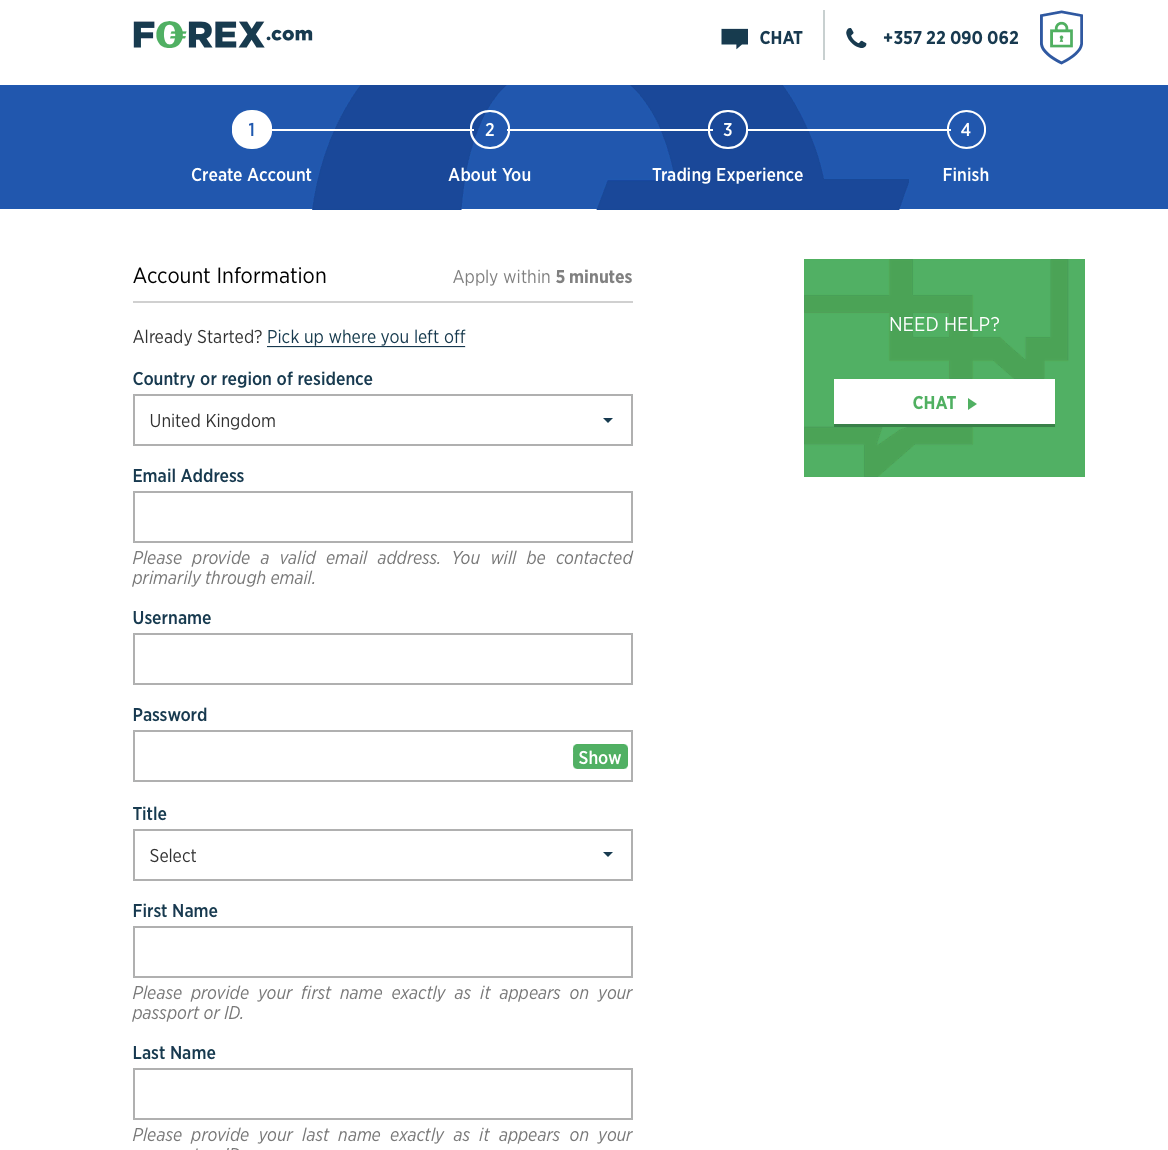 Formulir pendaftaran Forex.com